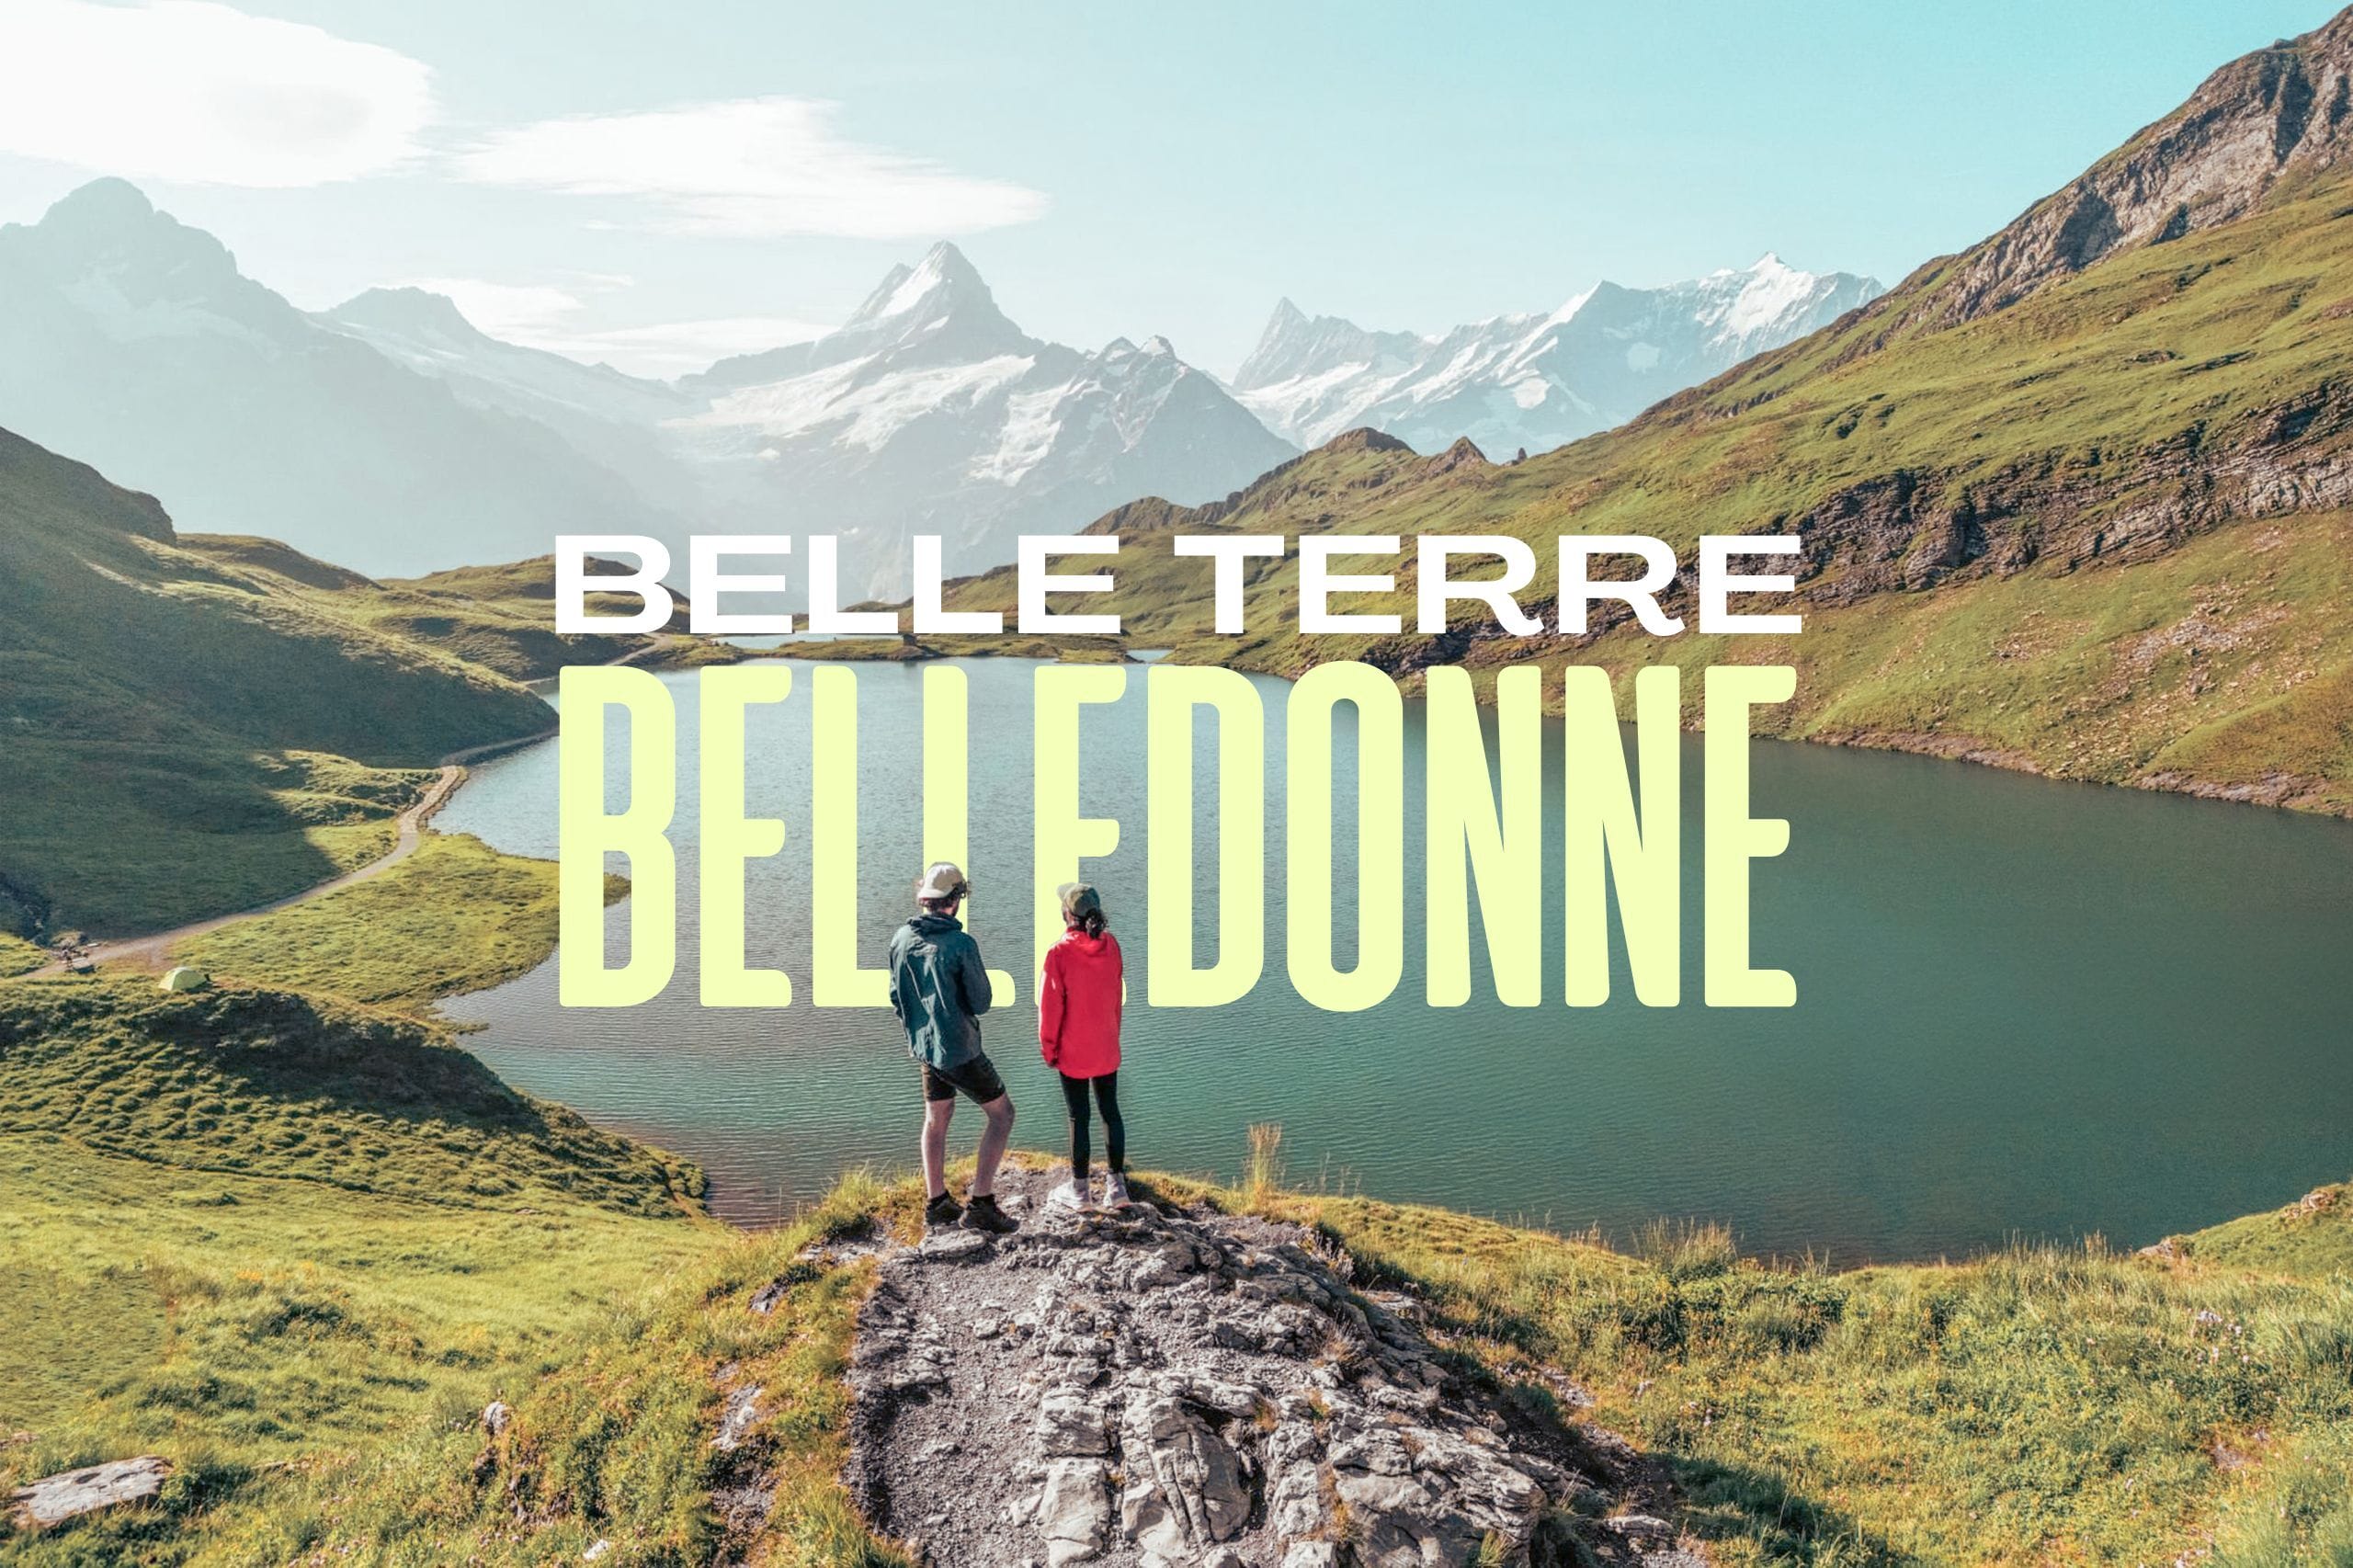 Belle terre, belledone : Randonnée à Grenoble : les lacs de Belledonne en 3 jours (GR738)